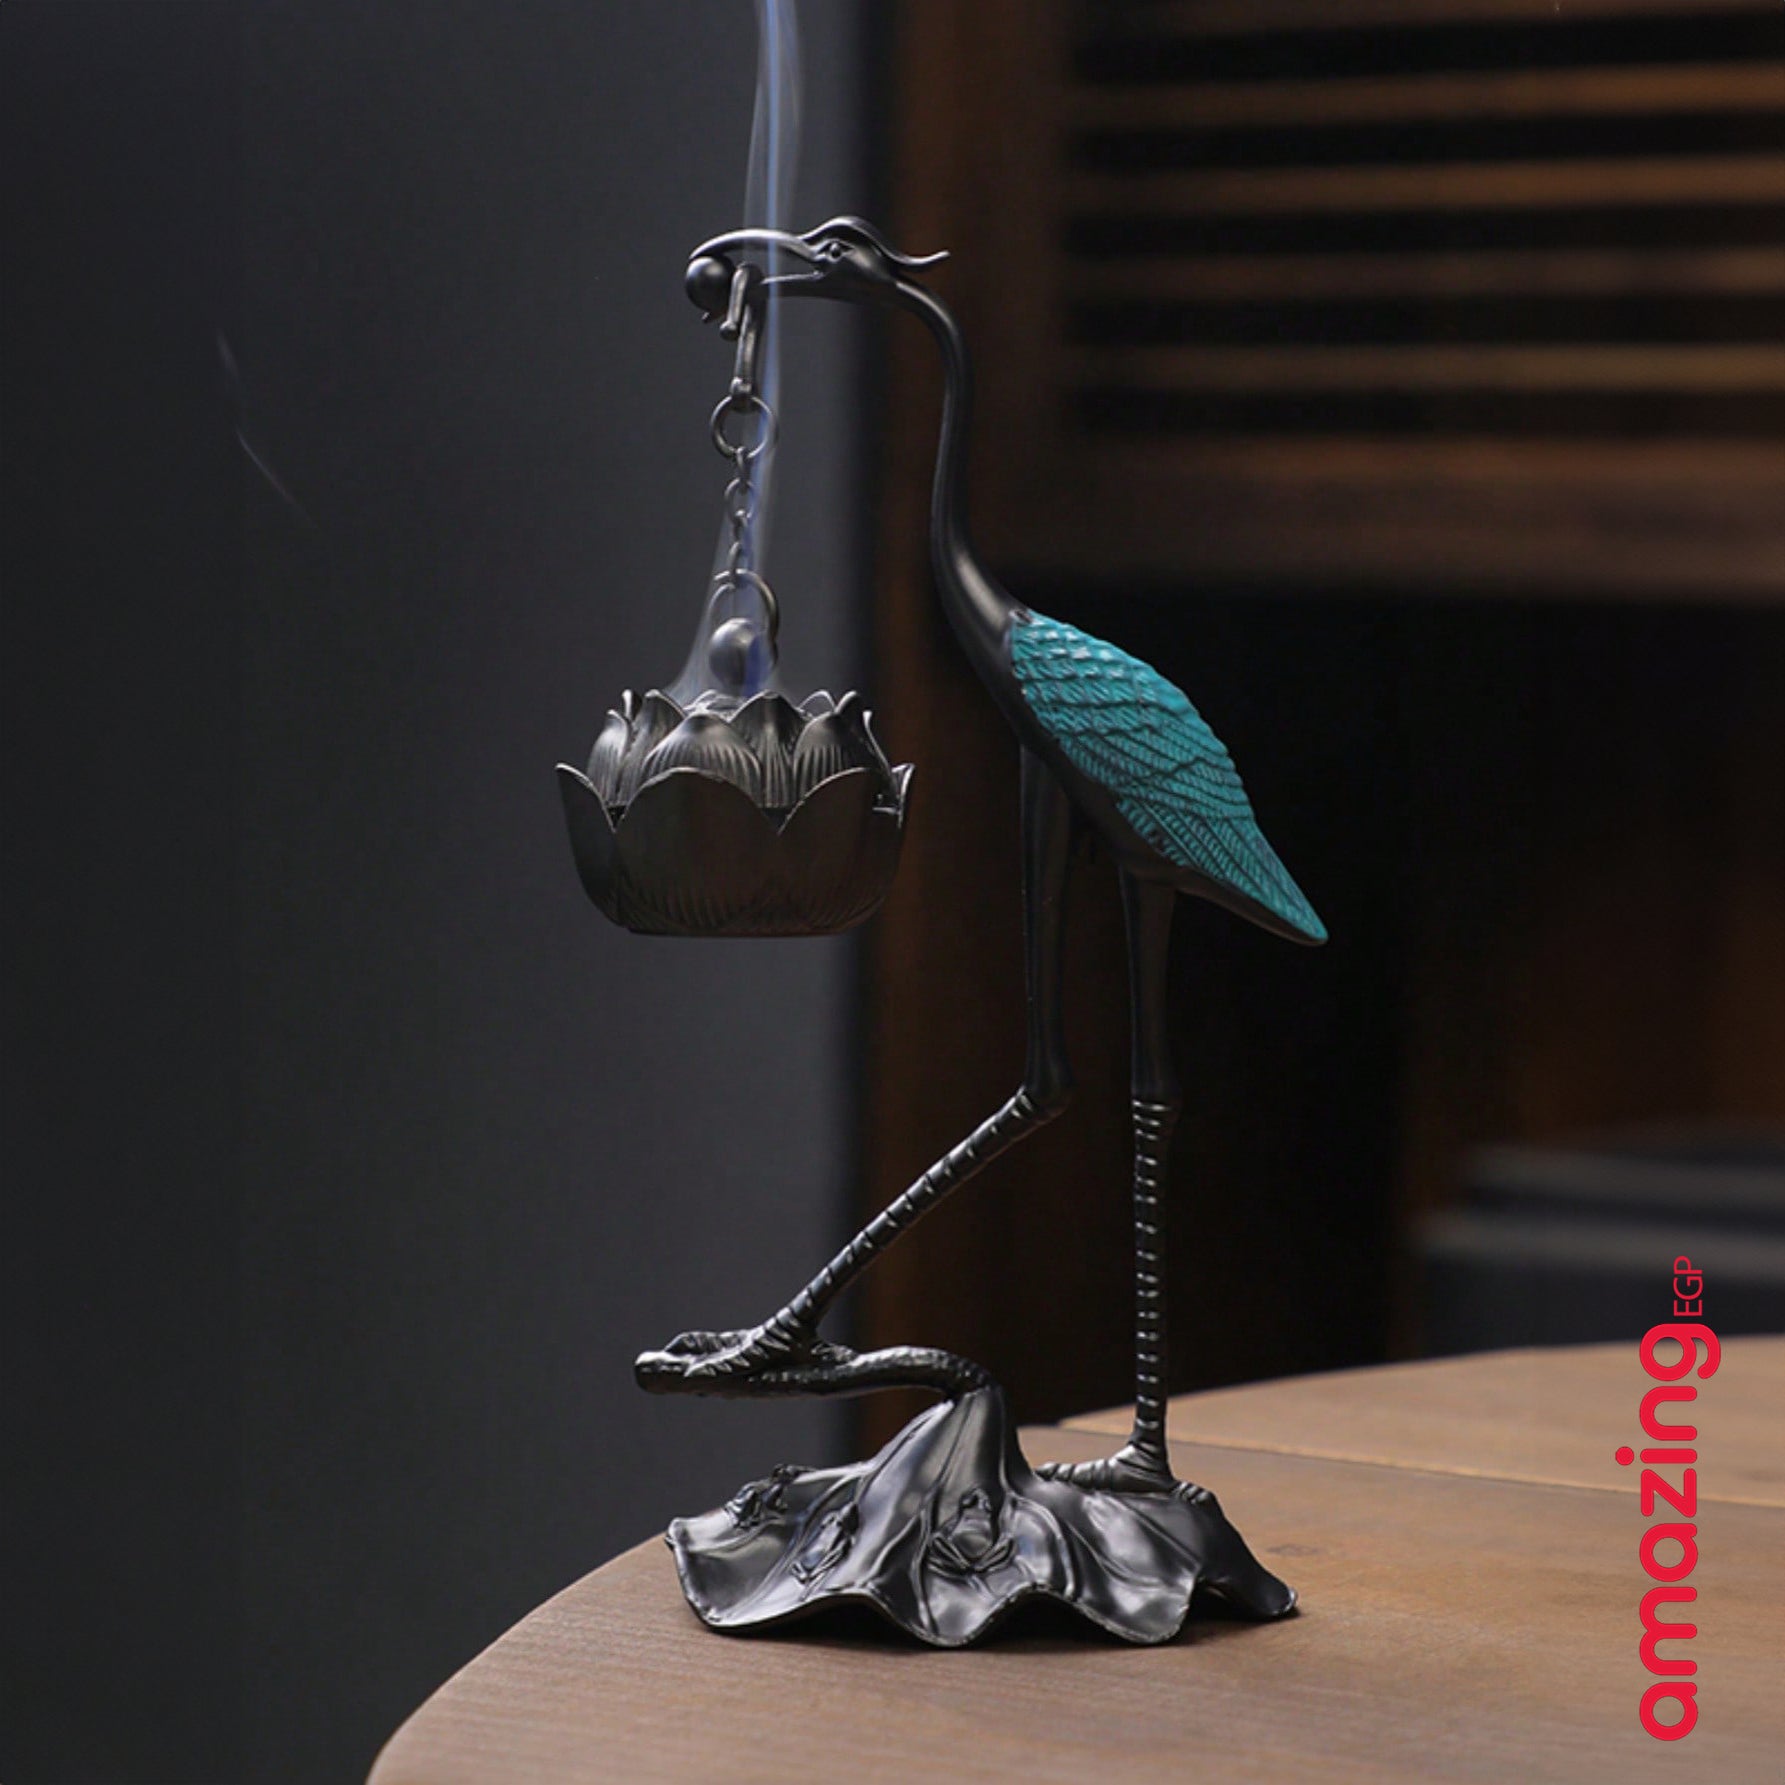 مبخرة وفواحة للبخور بتصميم ديكوري انيق على شكل طائر معلقة بزهرة ميني للديكور المنزلي